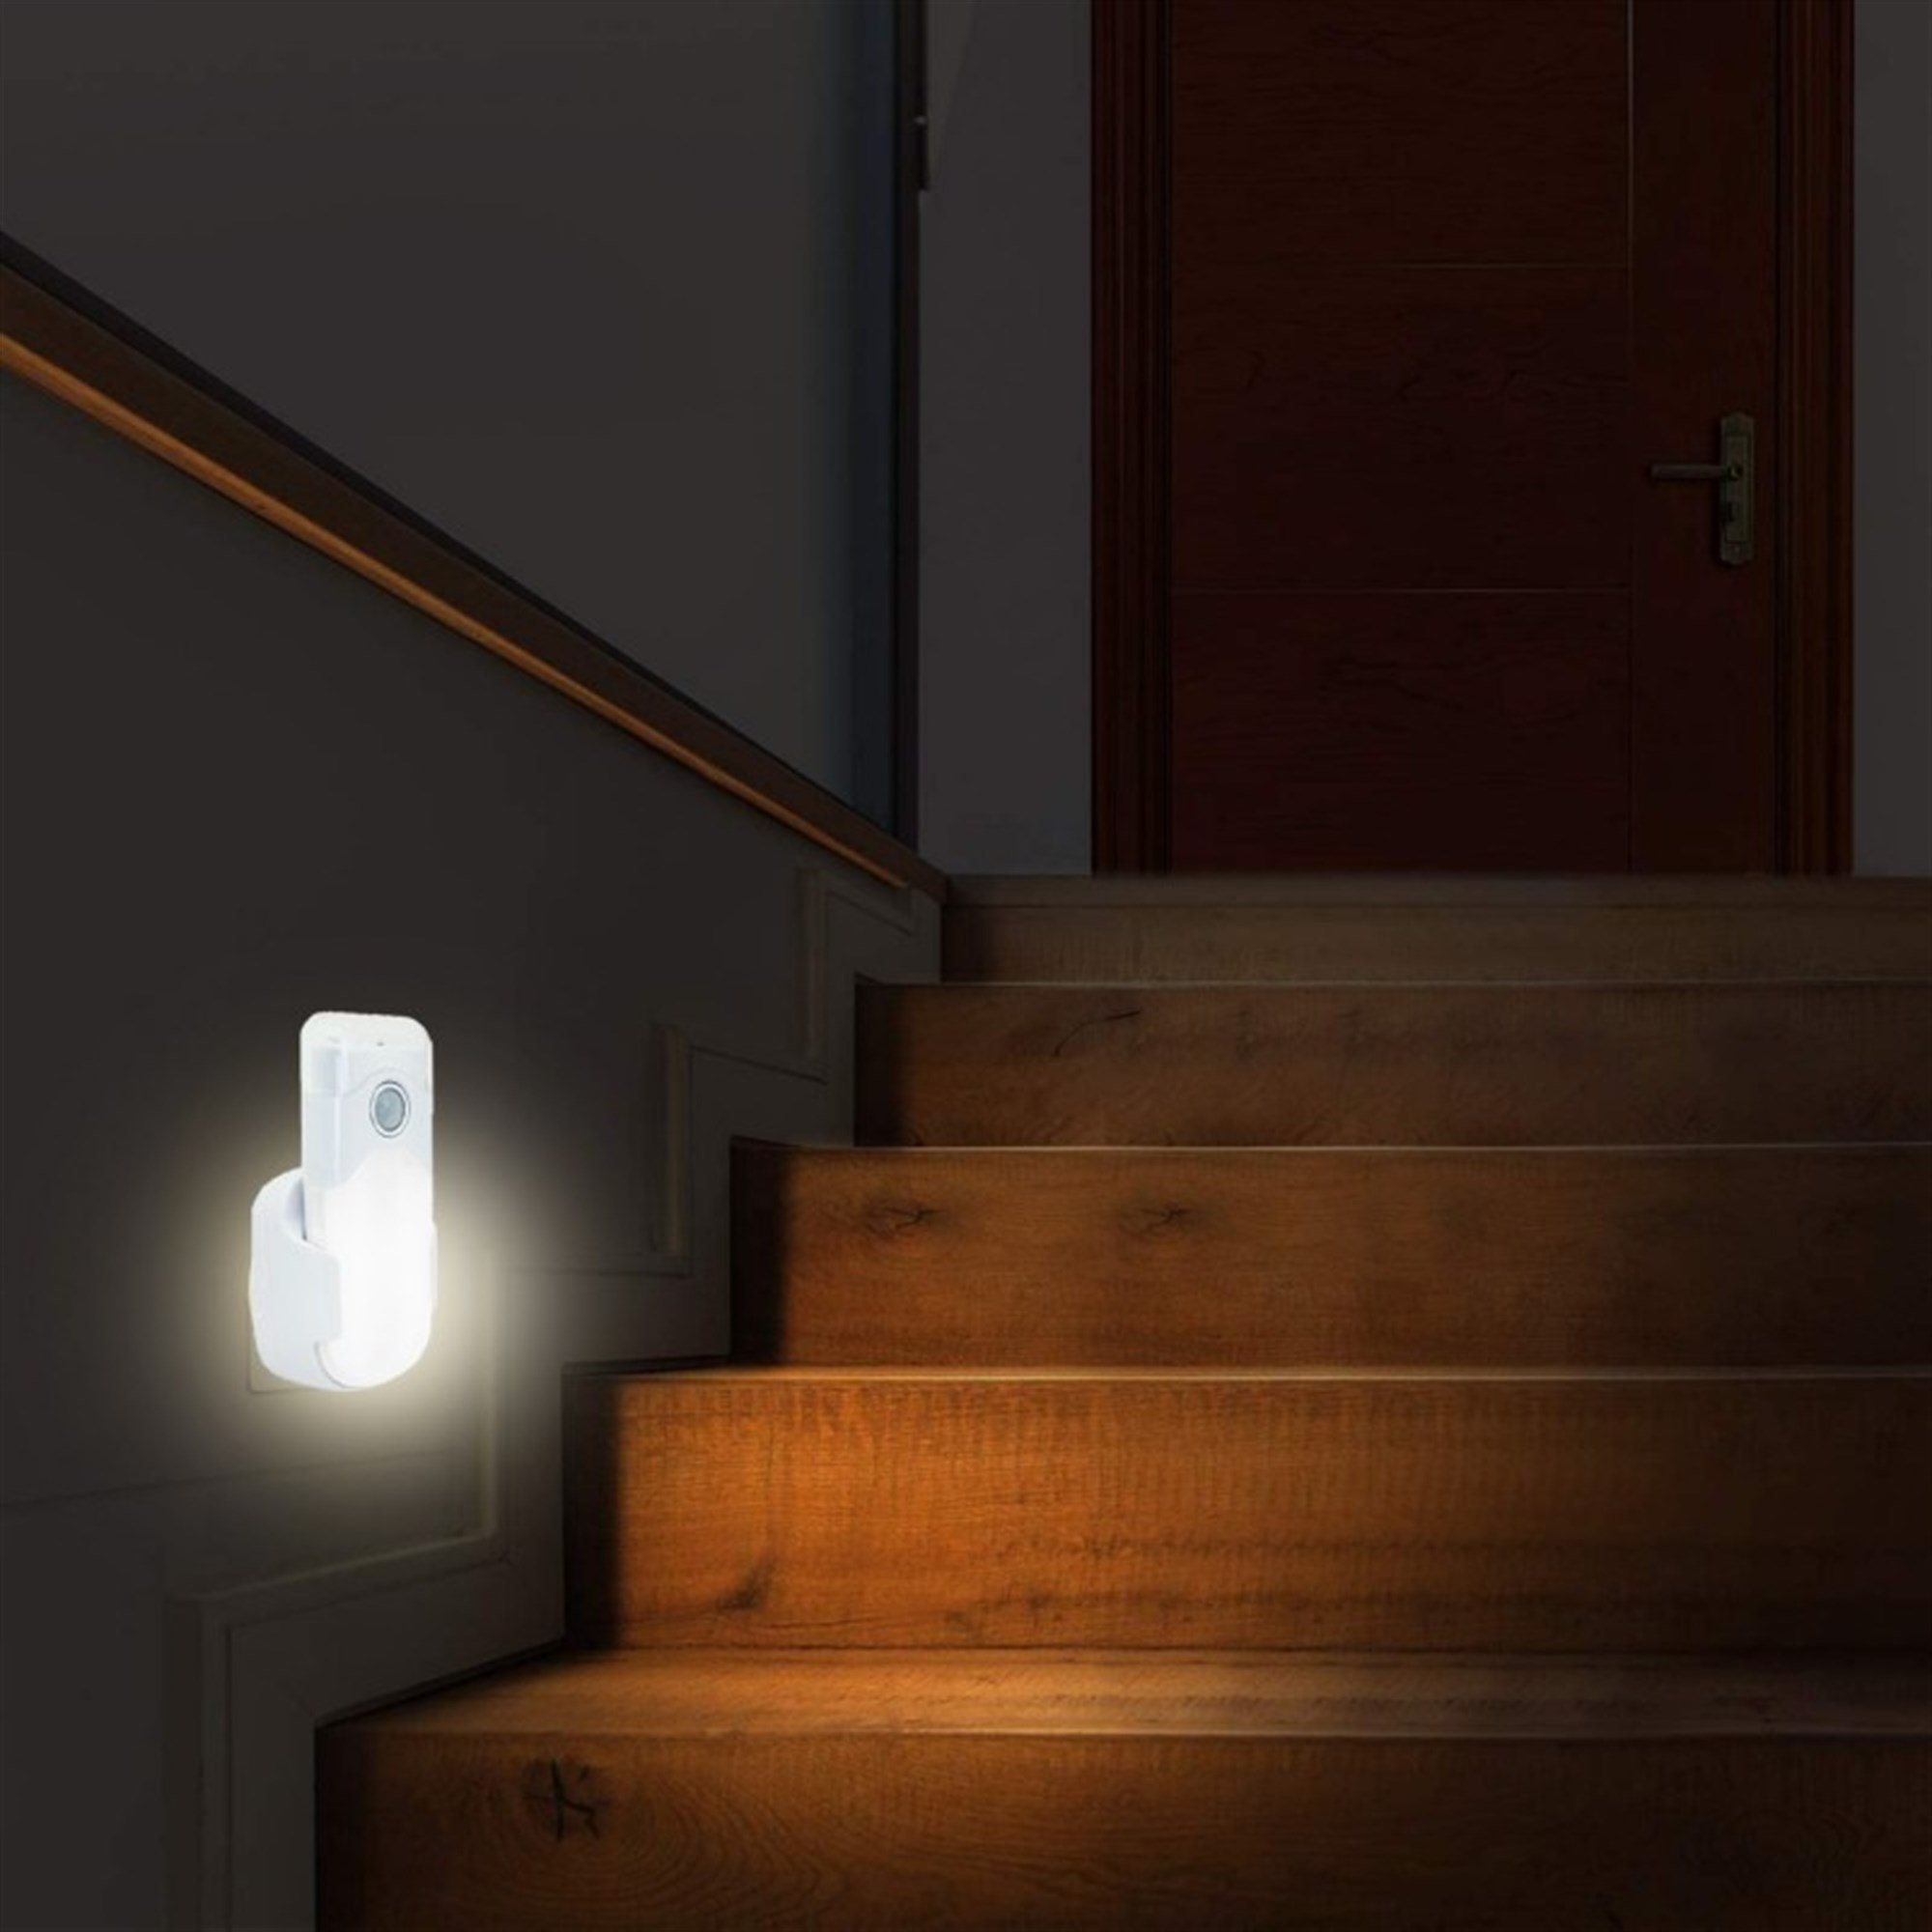 Otomatik acil durum aydınlatmalı LED gece lambası, karartma önleme, pratik  el feneri işlevi, hareket dedektörü ve